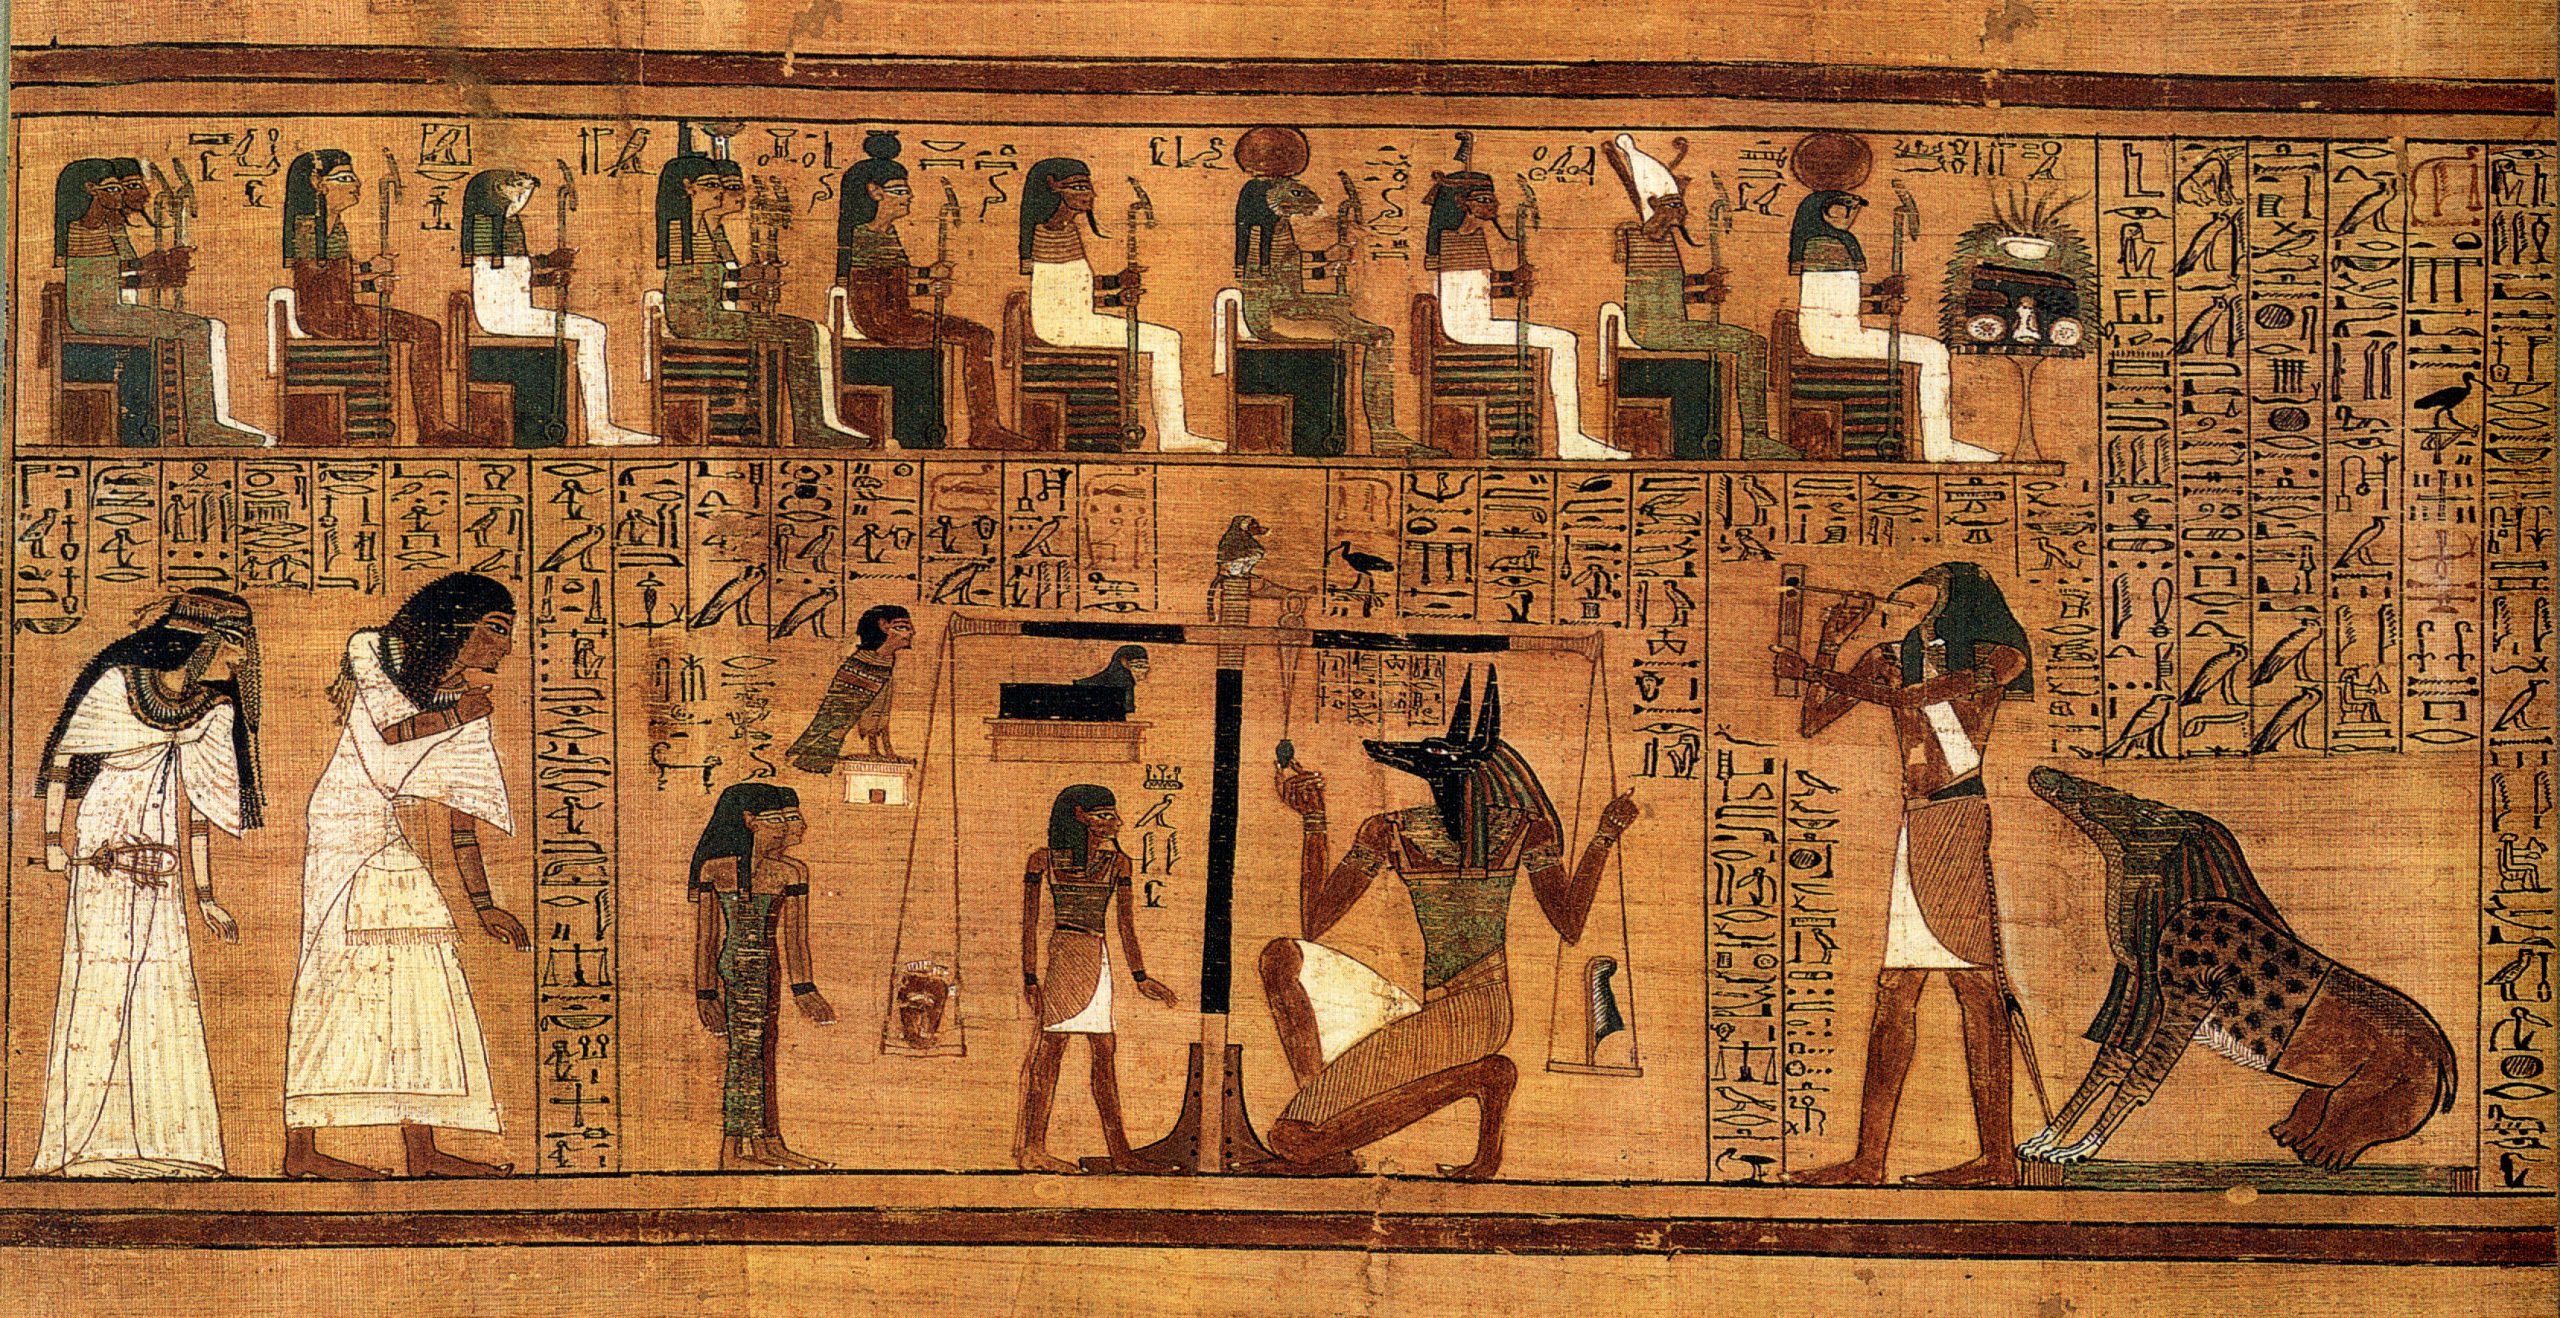 Imatge de l’escena del judici del difunt davant Osiris procedent del Llibre dels Morts d’Ani, actualment conservat al British Museum de Londres. Font: Viquipèdia.